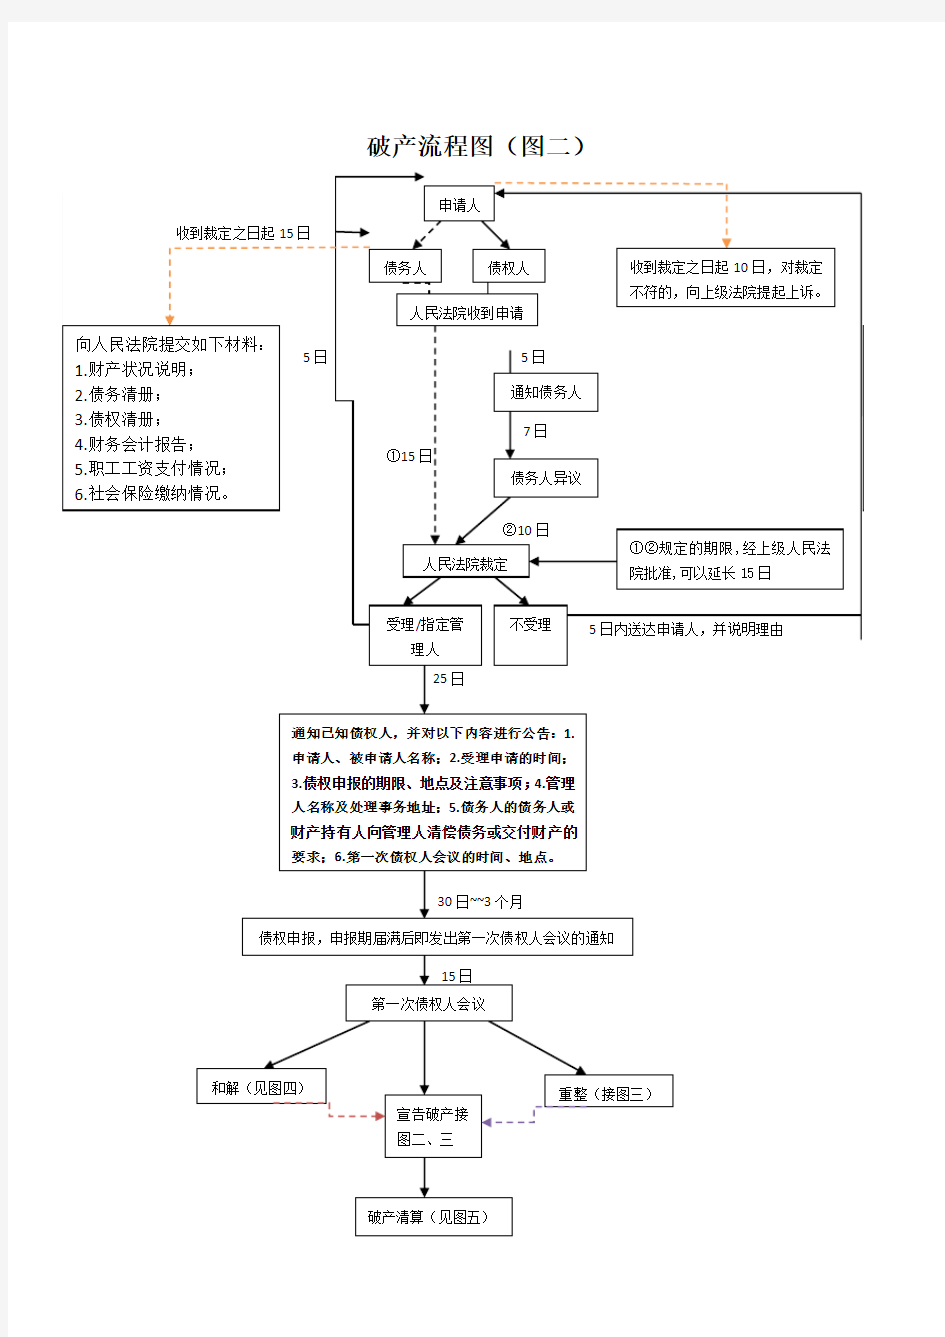 【新修订】 破产流程图